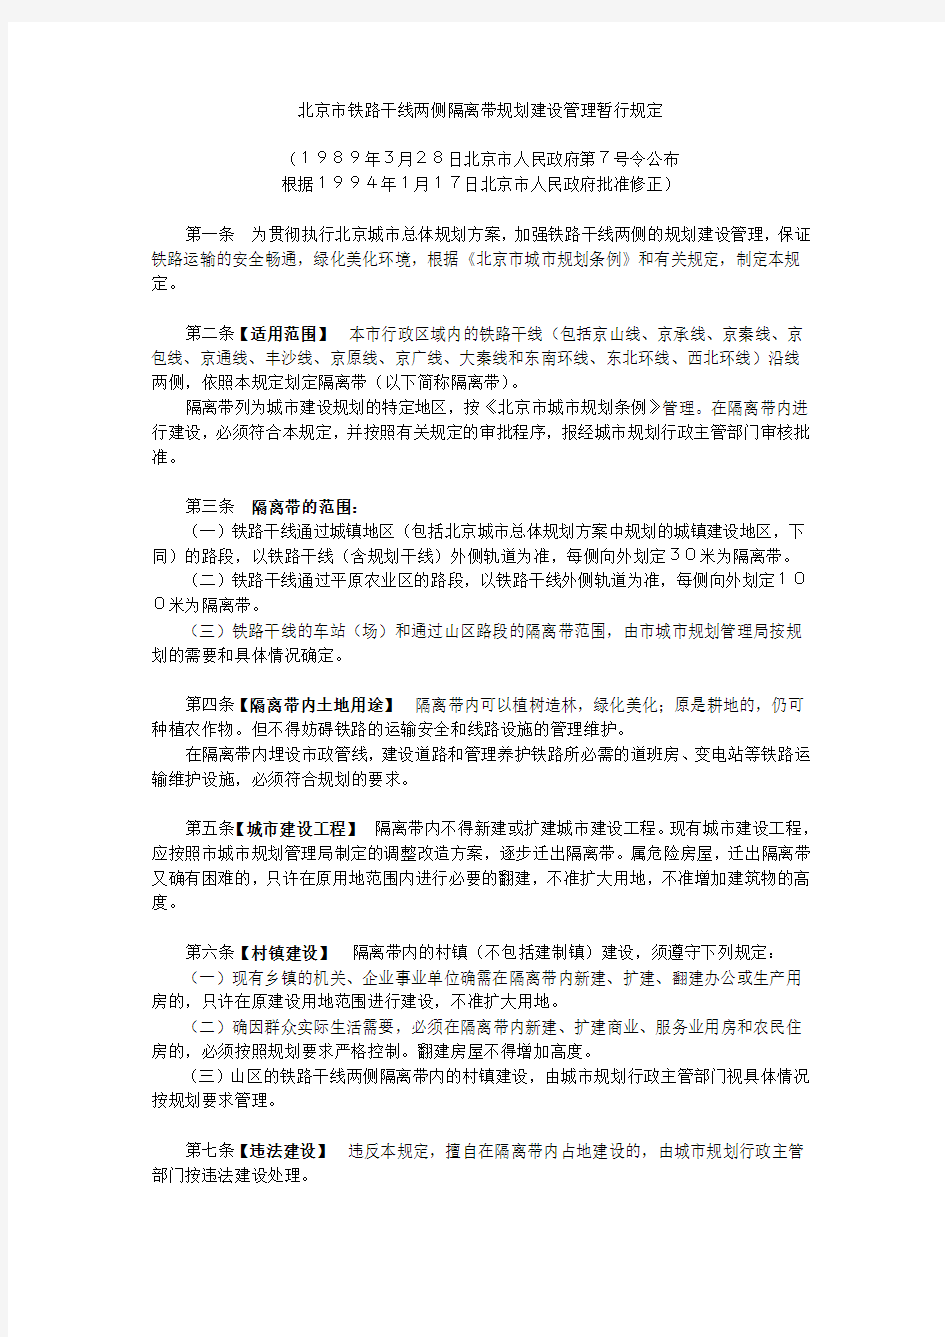 7号令北京市铁路干线两侧隔离带规划建设管理暂行规定